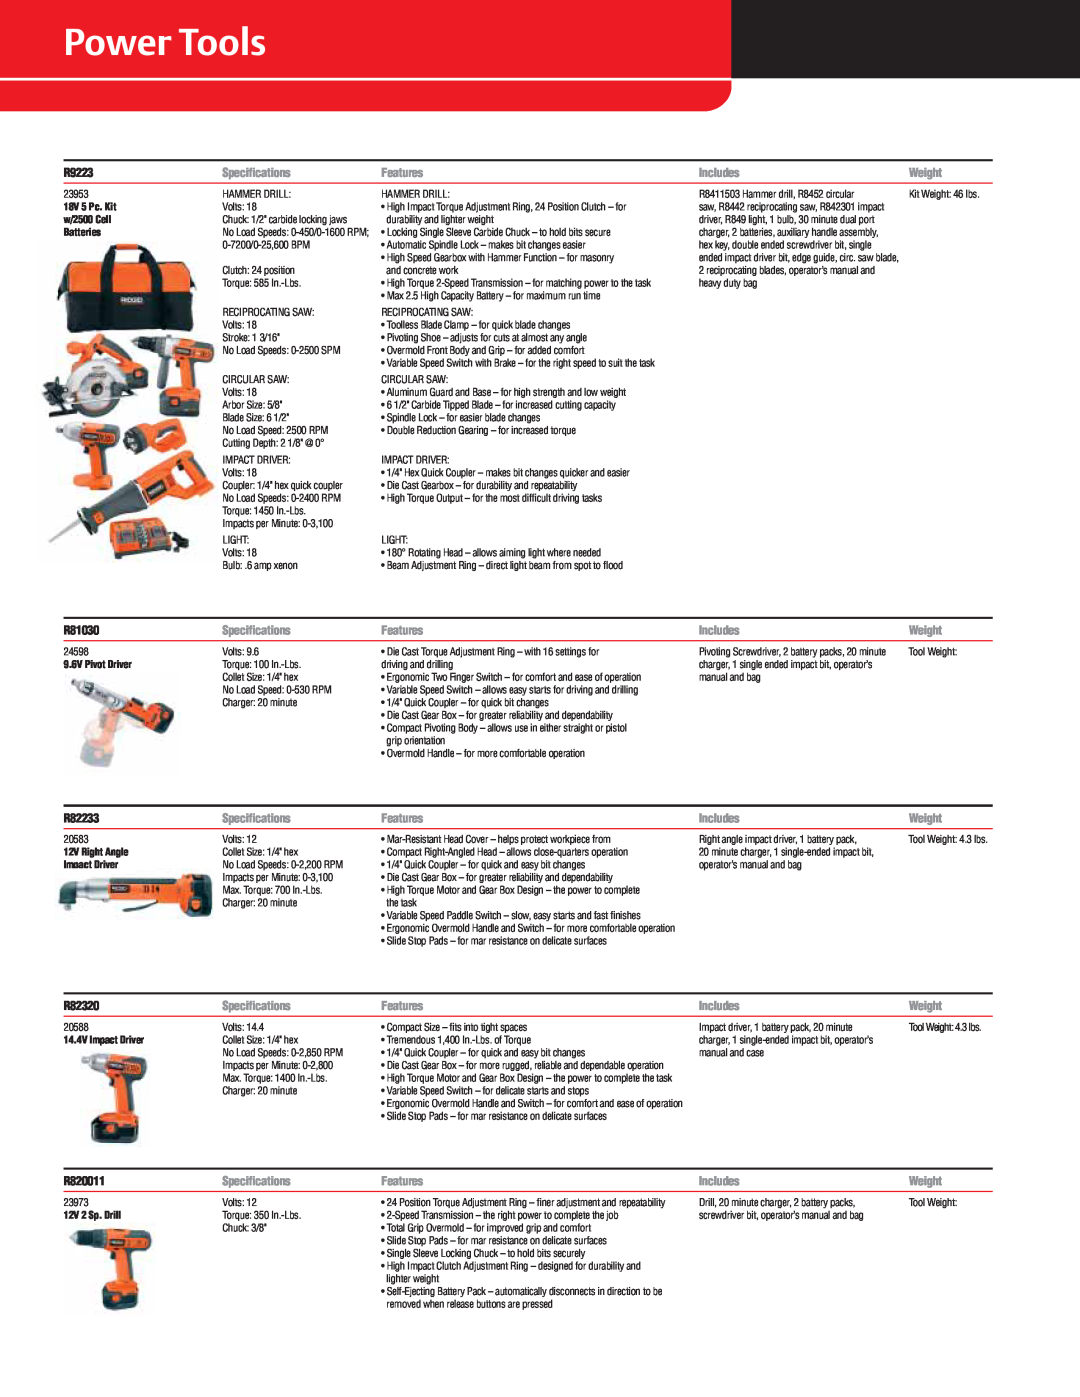 RIDGID R9213, R932 specifications Power Tools, R9223, R81030, R82233, R82320, R820011 